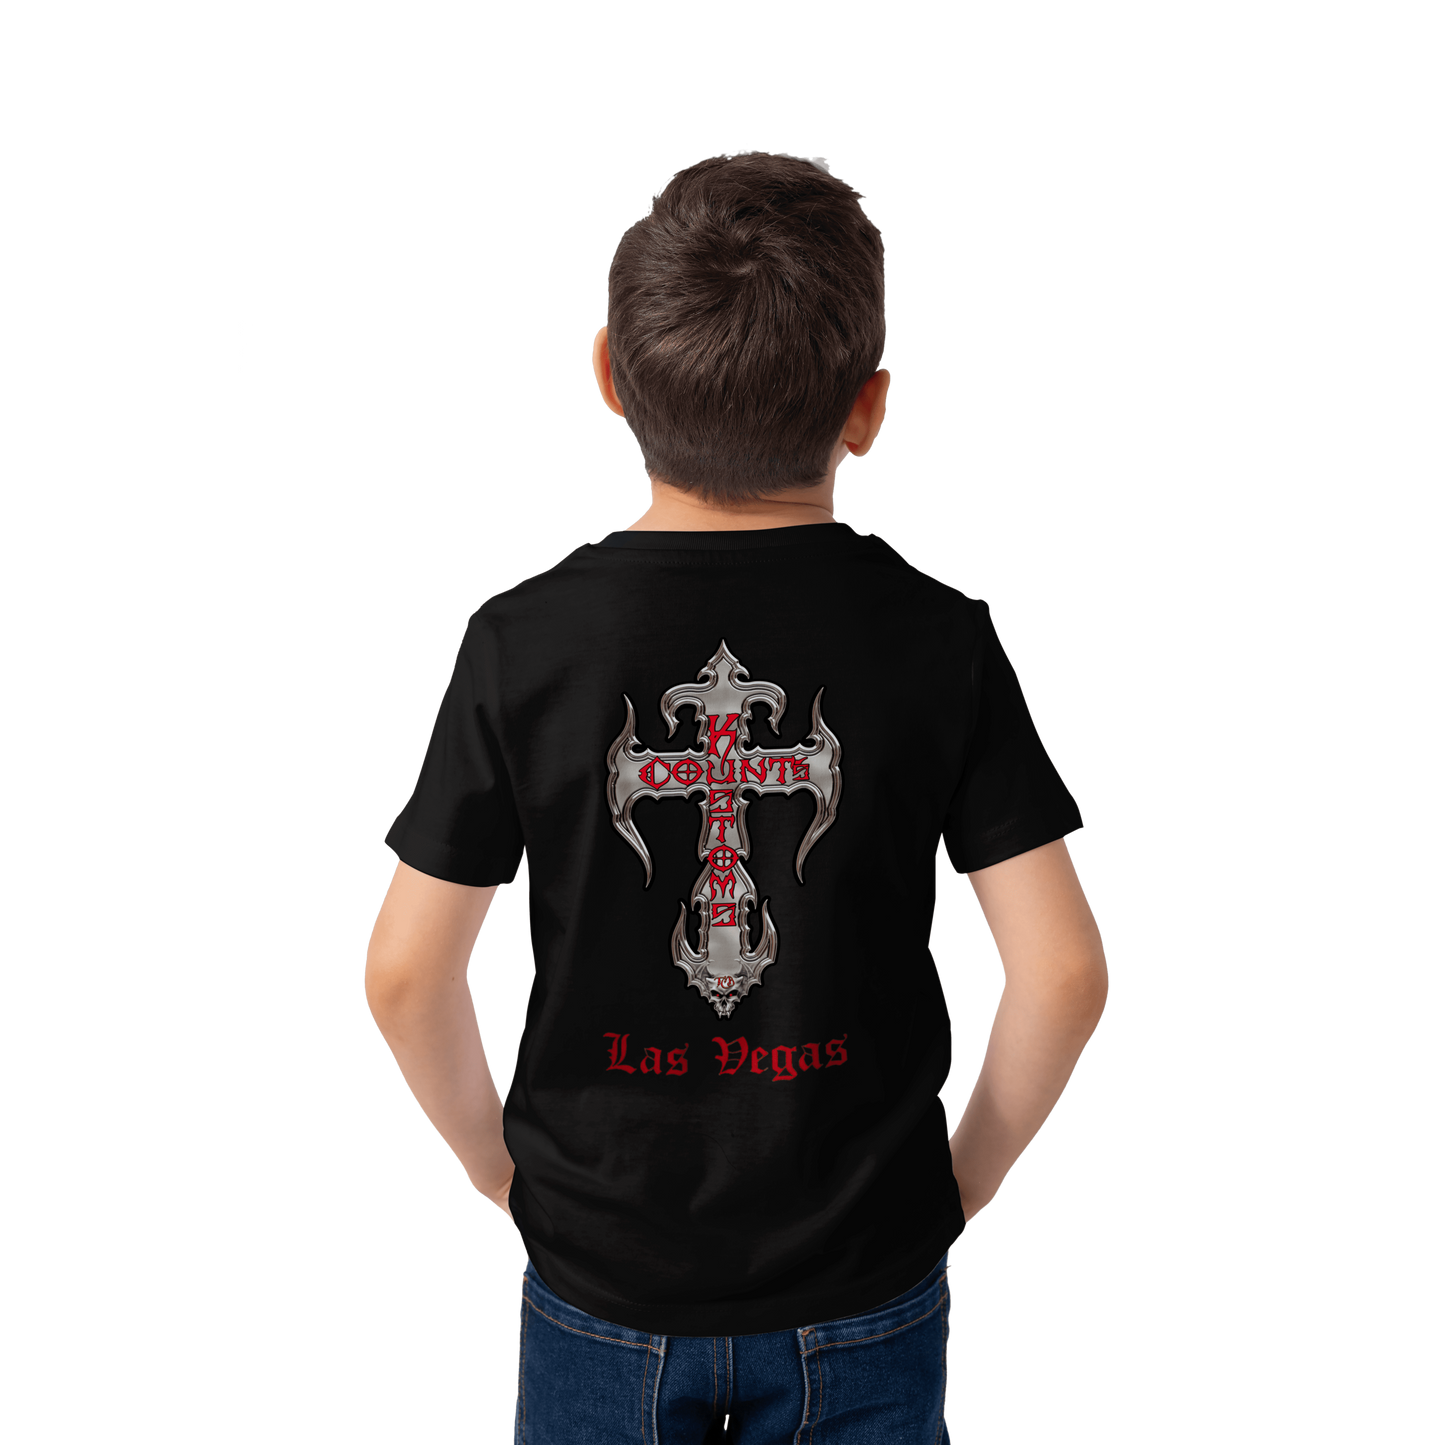 Count's Kustoms KROSS Kid's Unisex T-Shirt